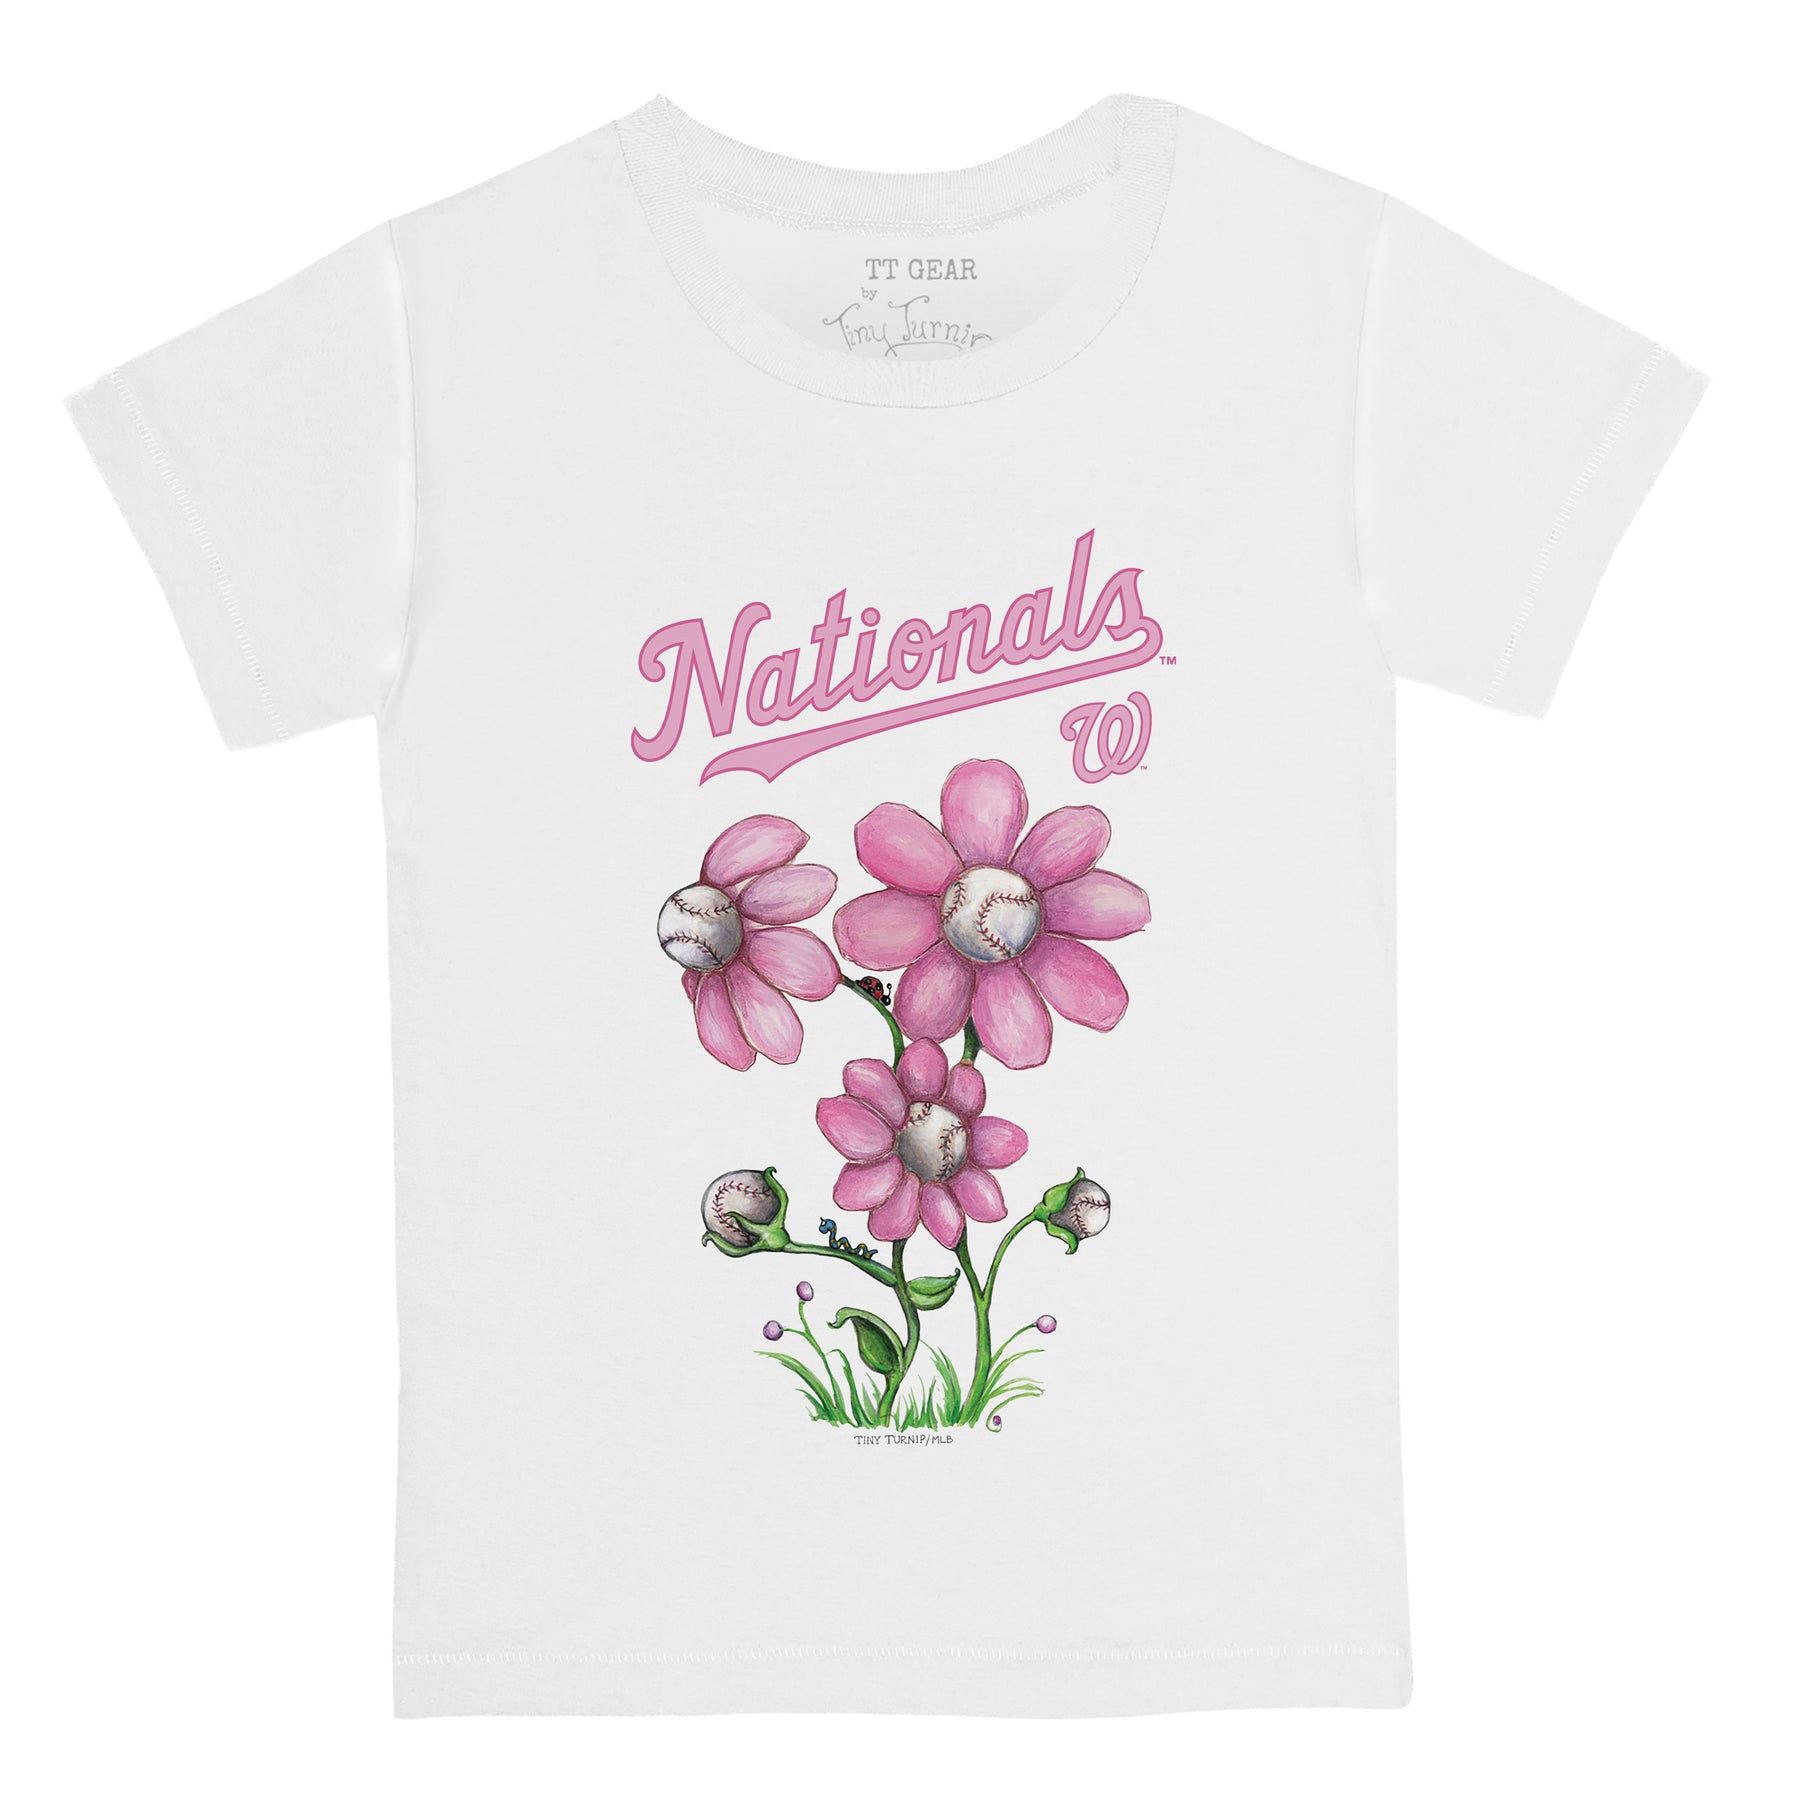 Washington Nationals Blooming Baseballs Tee Shirt